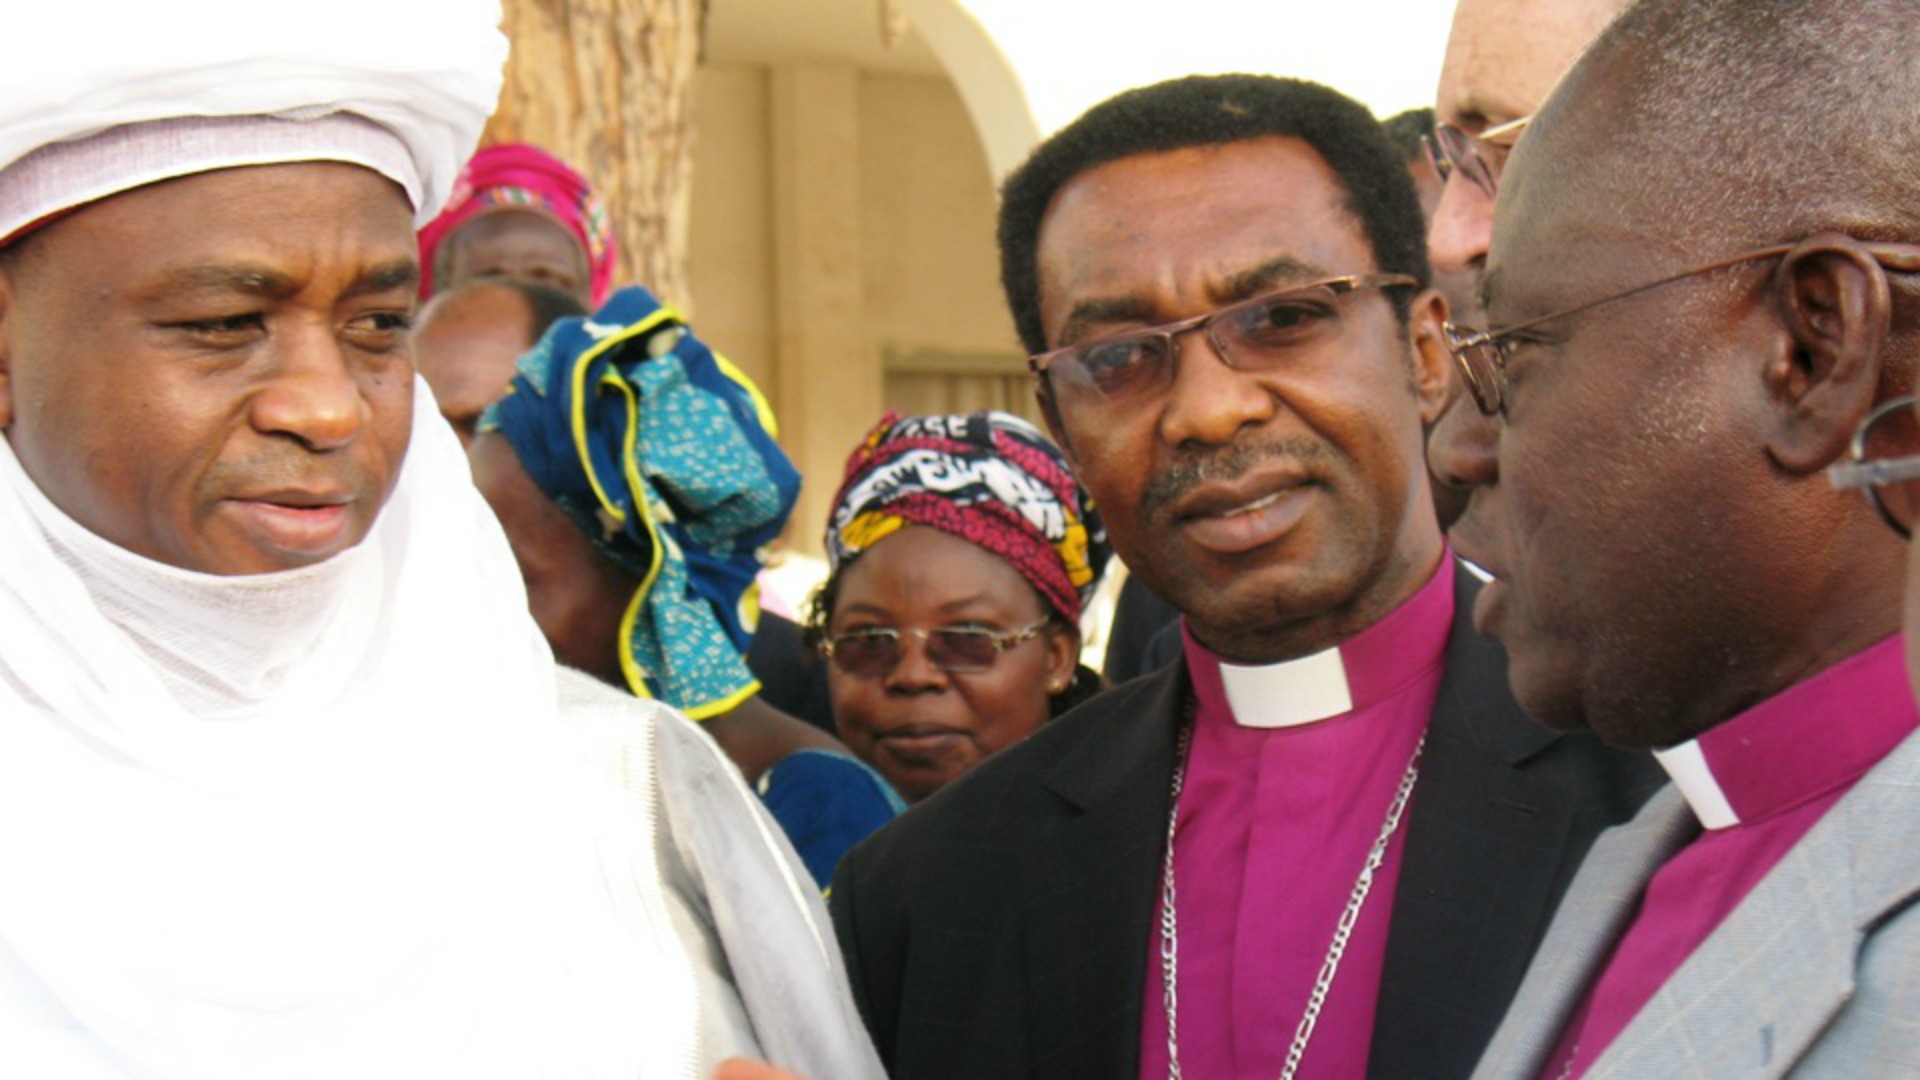 Rencontre de leaders chrétiens et musulmans à Kaduna  (Nigeria) en 2015. Le dialogue se poursuit | © lstcccme.wordpress.com